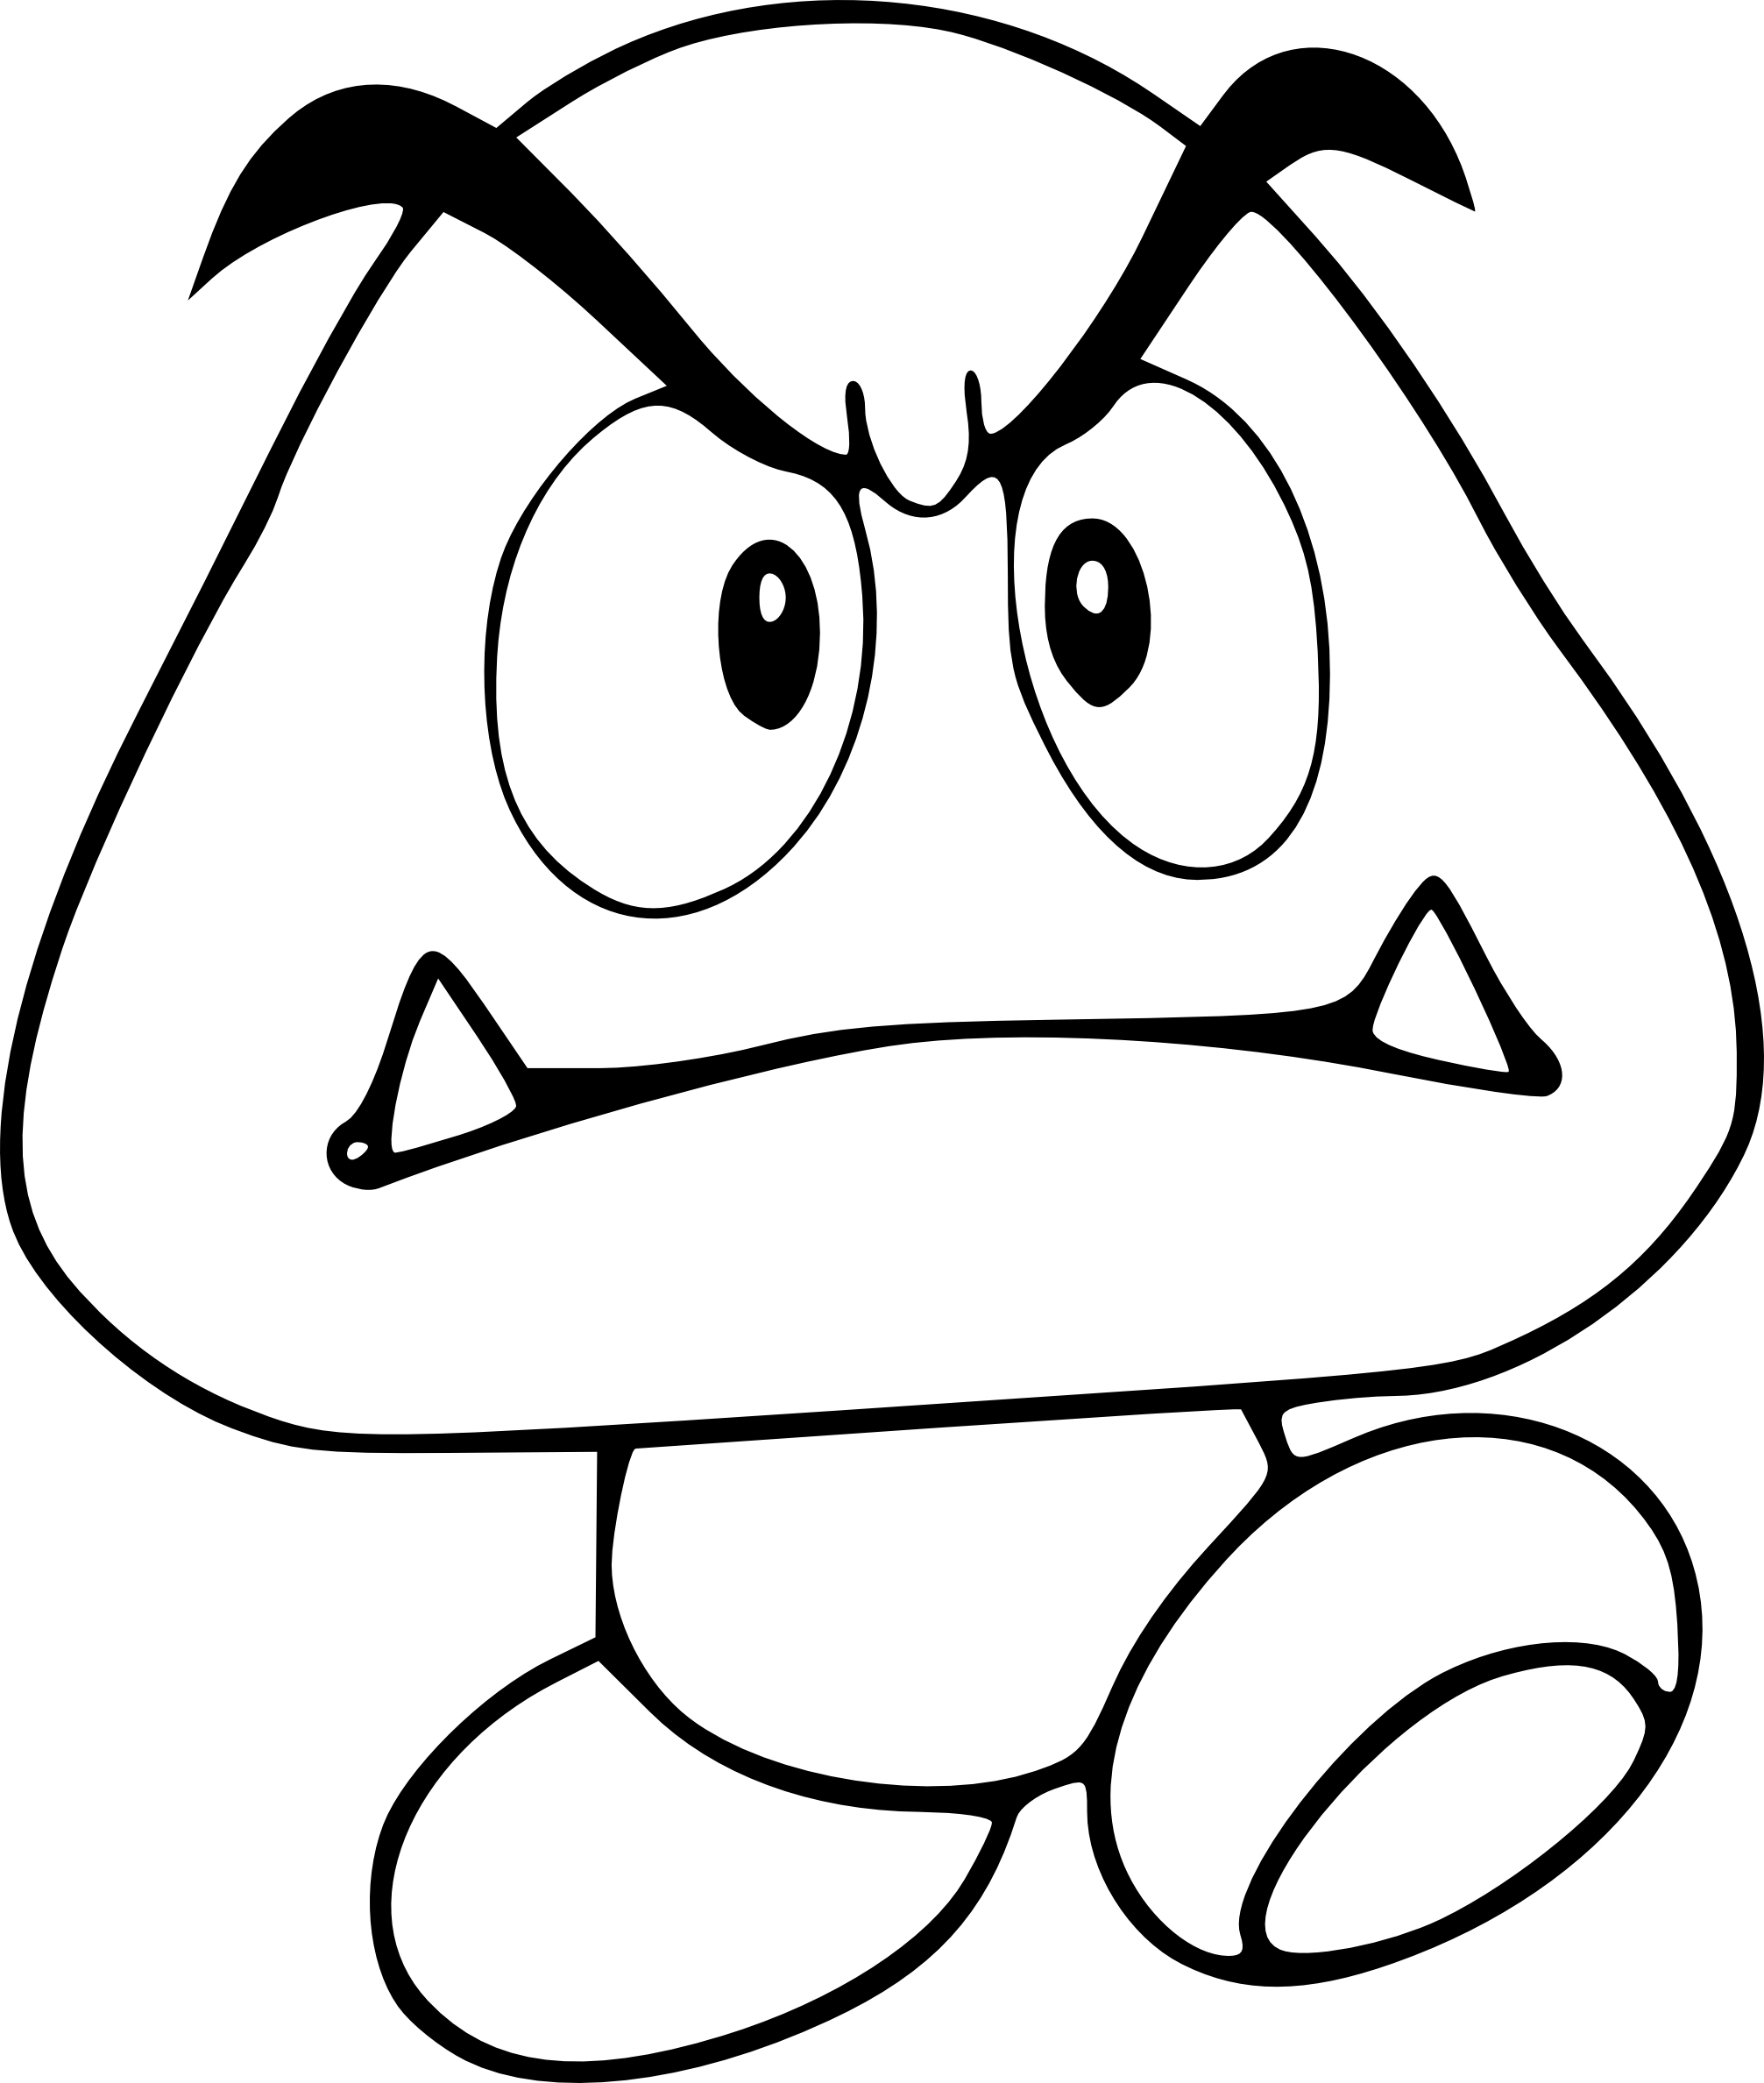 Coloriage Goomba personnage de Mario   imprimer